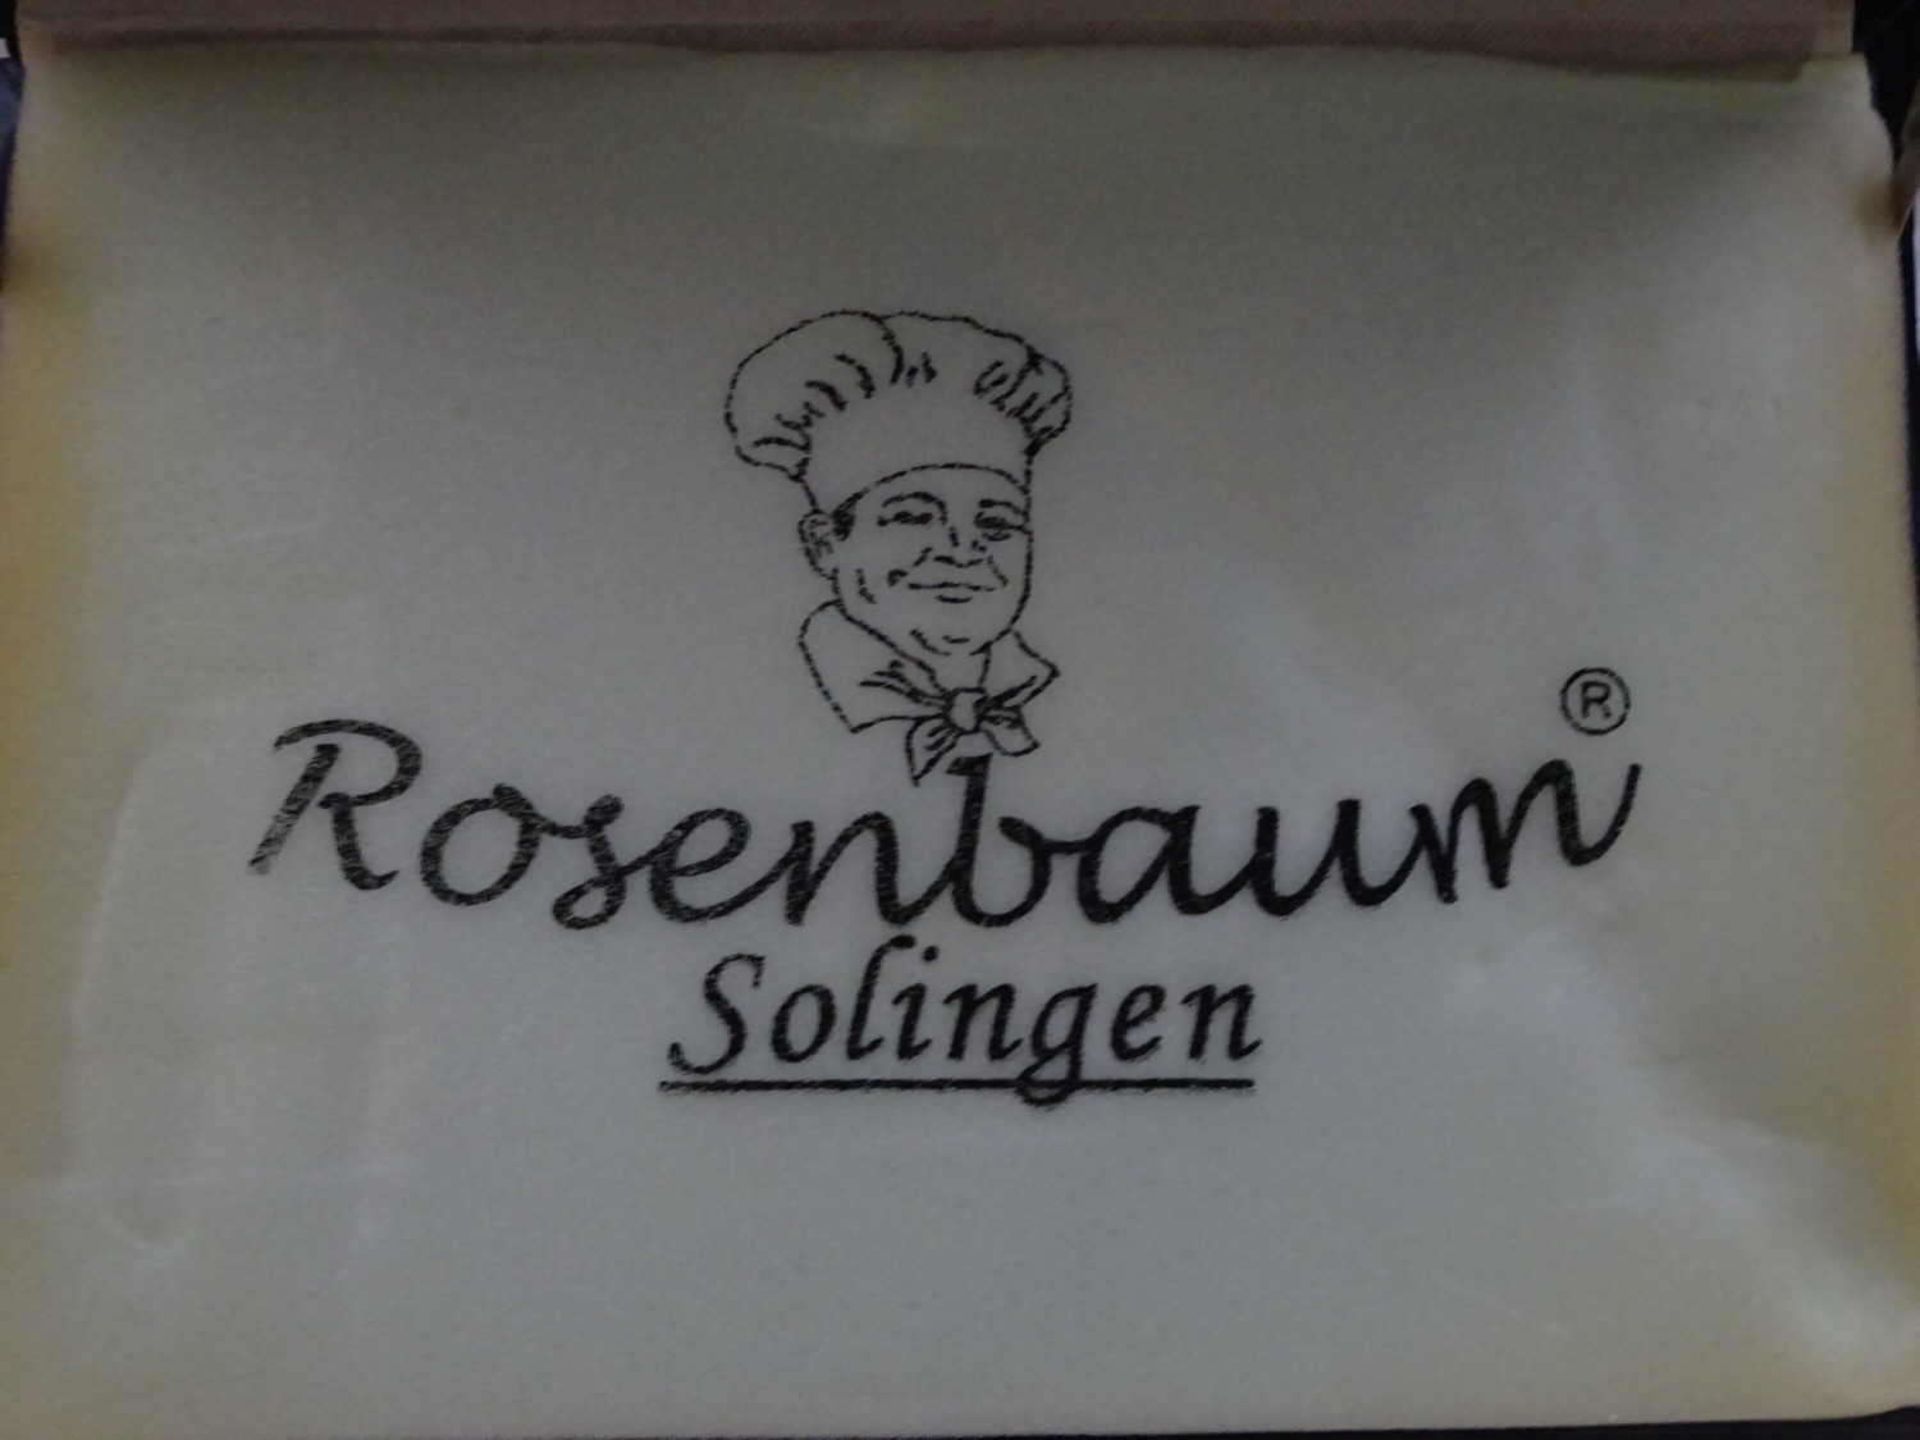 Rosenbaum Solingen, 24-teiliges Messerset "Rose-Keller", im Diplomatenkoffer. Neu und ungebraucht. - Bild 4 aus 4